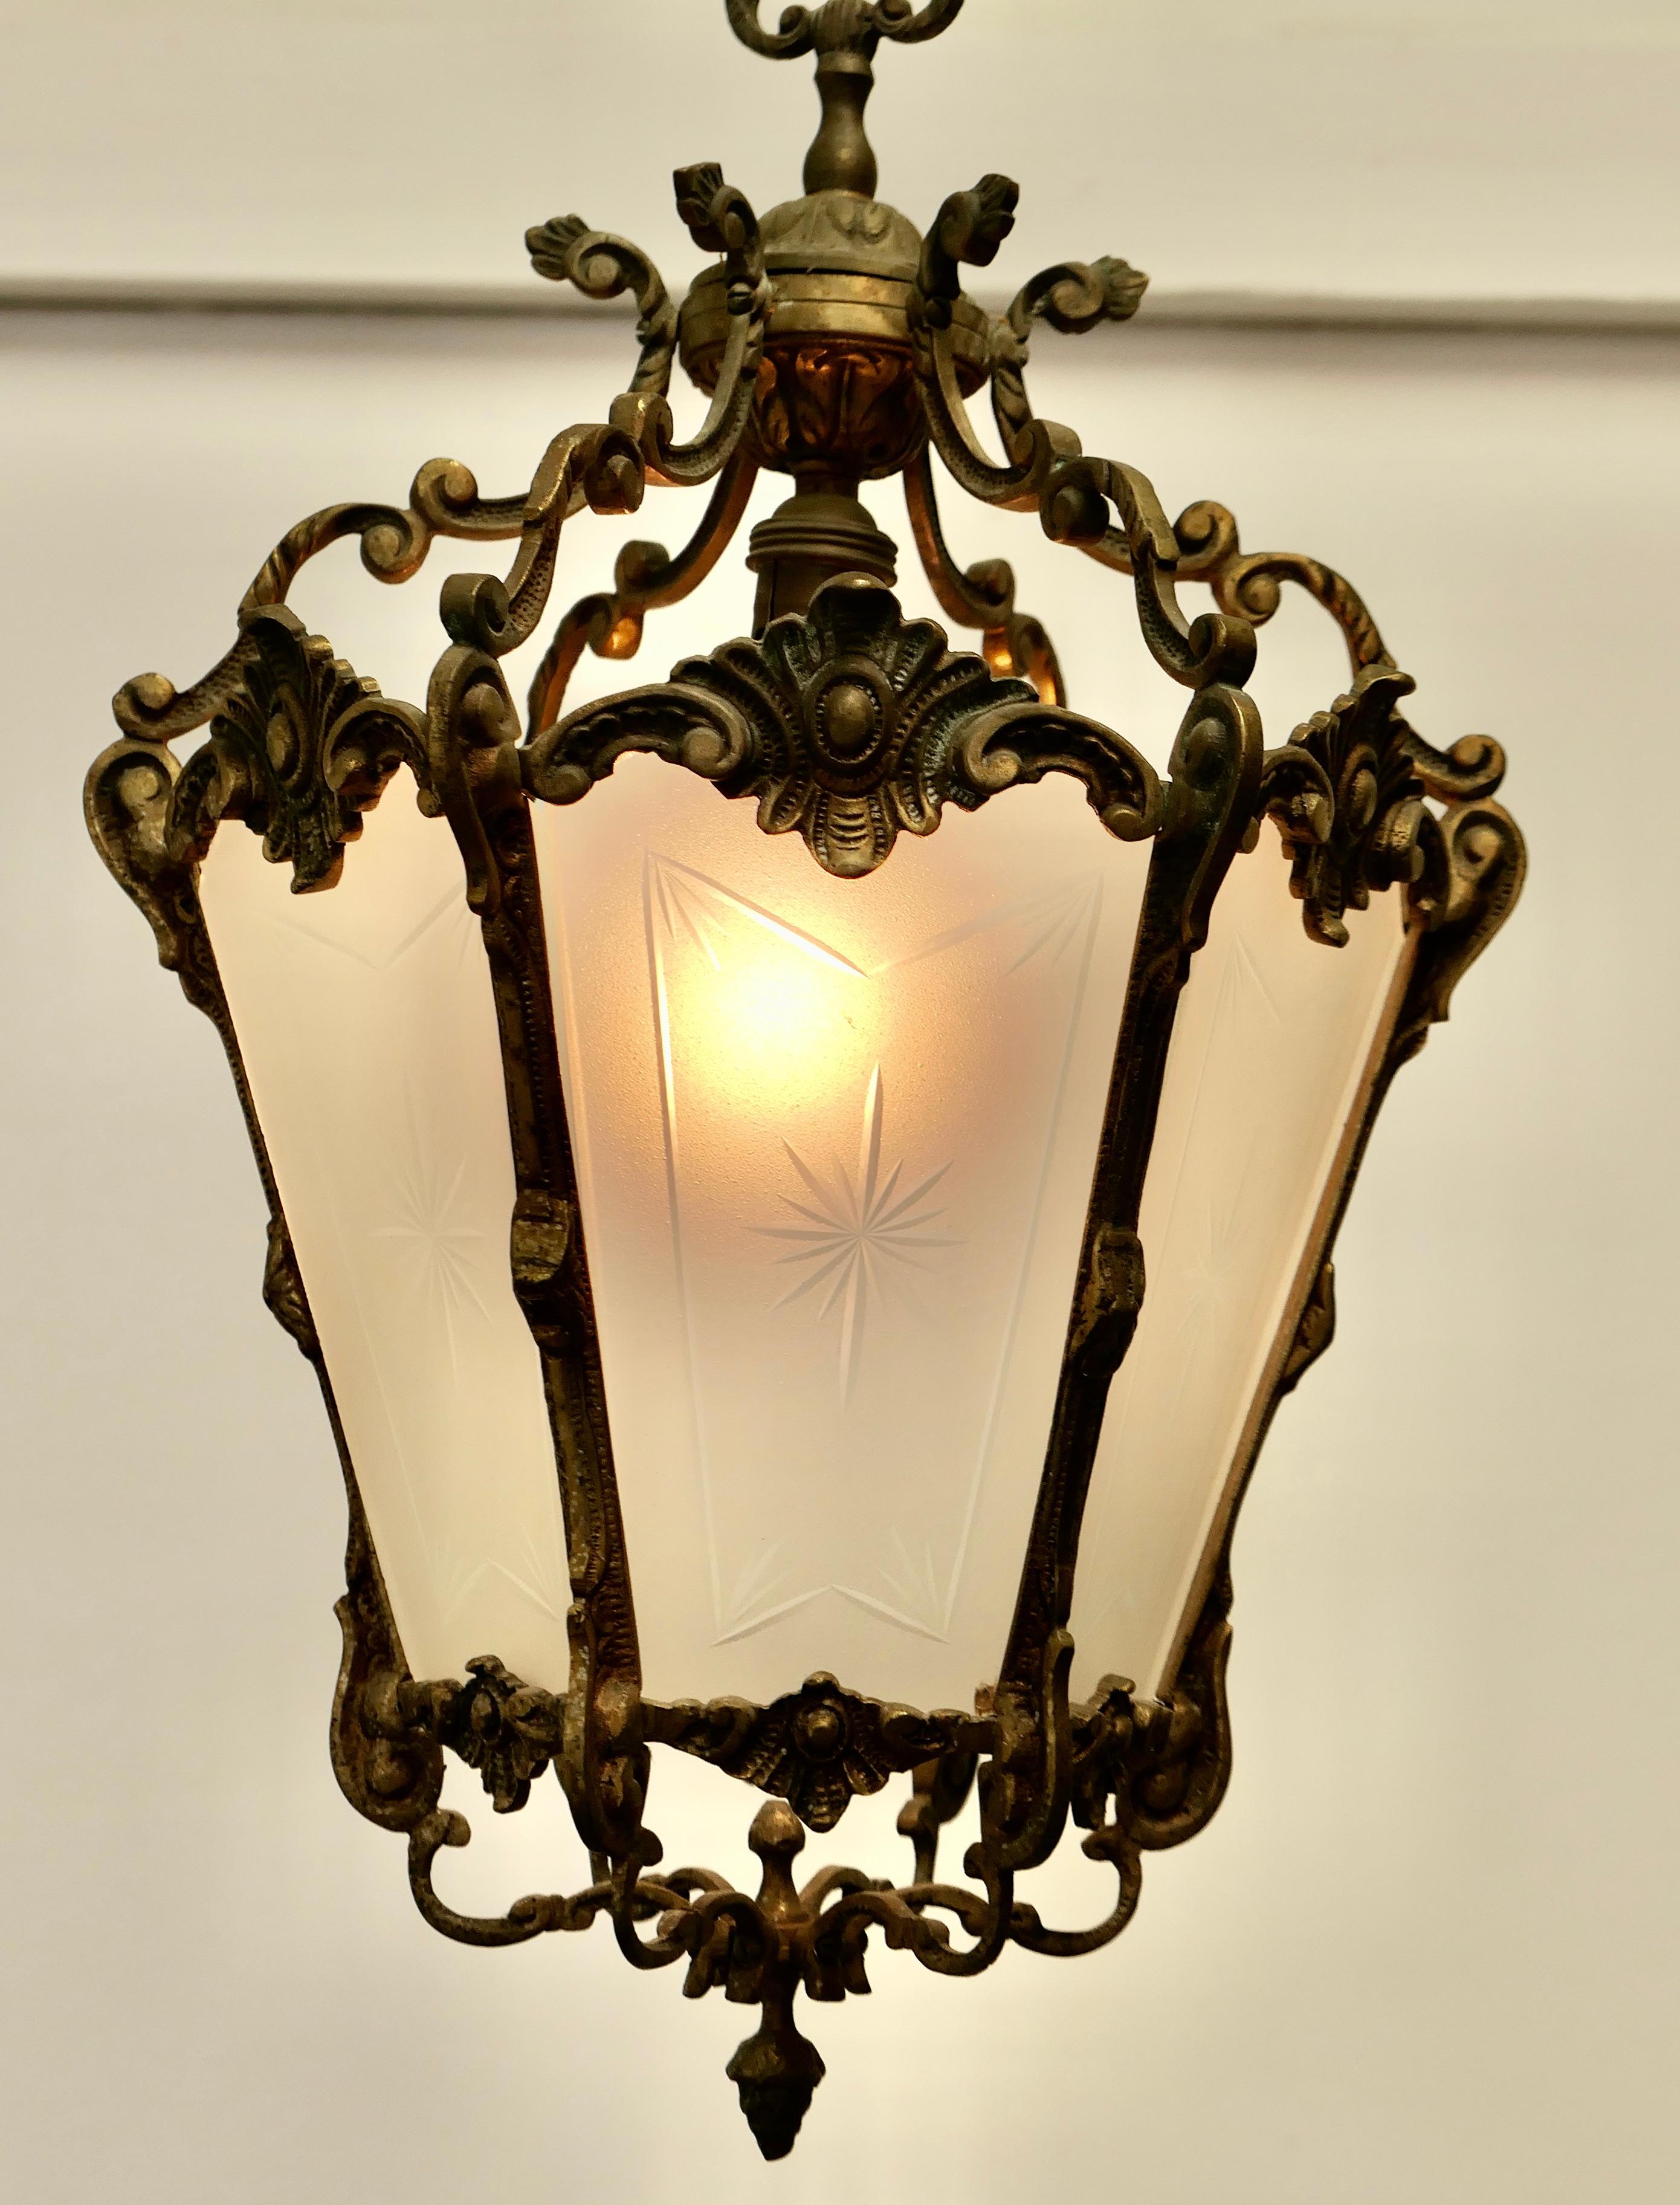 Französisch Rokoko-Stil Messing und geätztem Glas Laterne Hall Light

Eine hervorragende Qualität schwere Messing-Laterne, das Licht hat 6 undurchsichtige Glasscheiben, diese sind mit einem Starburst geätzt 

Die Laterne ist im französischen Stil